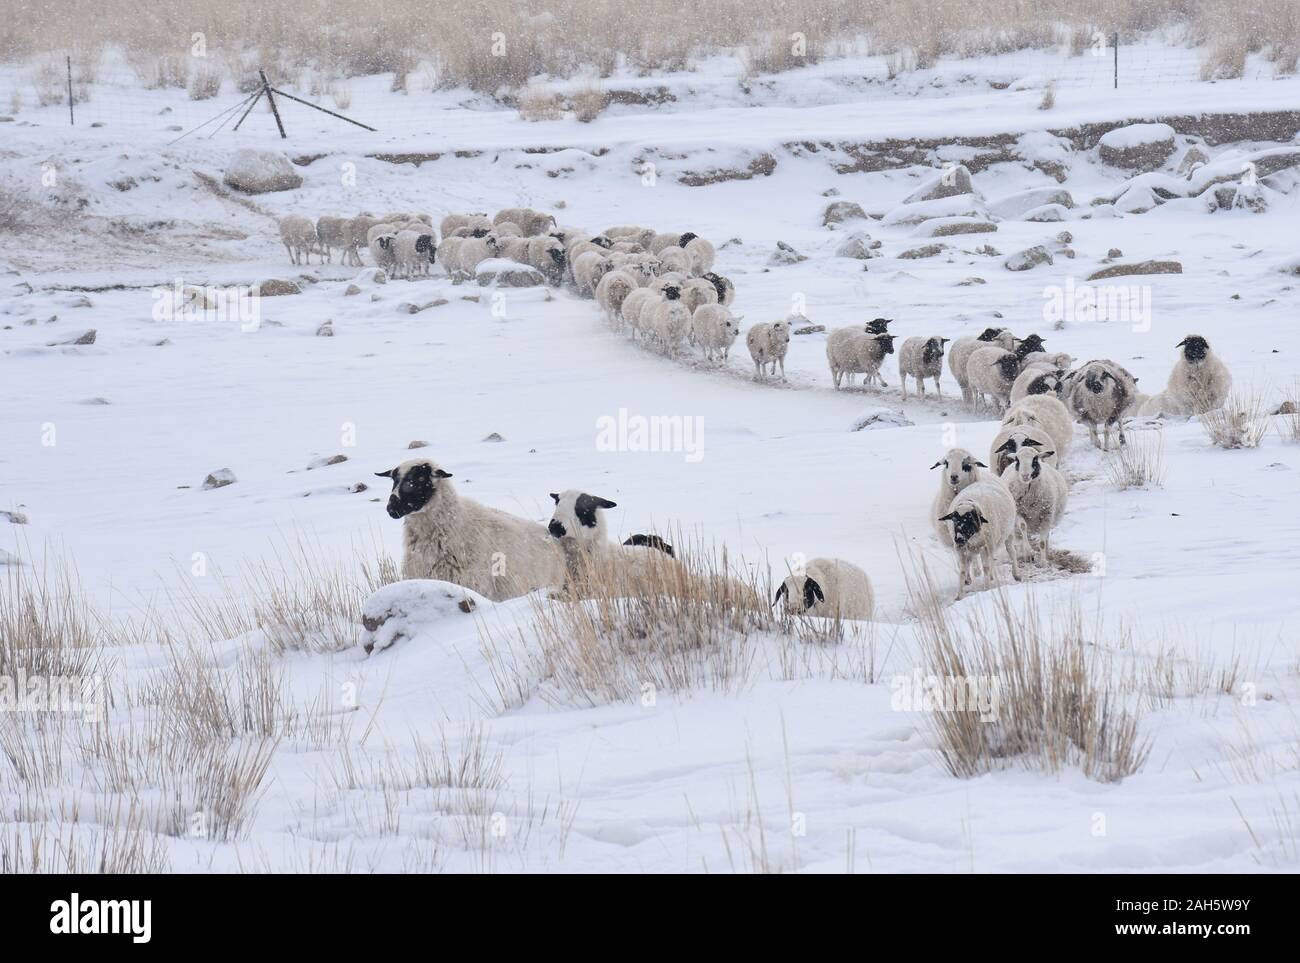 Hohhot. 24 Dez, 2019. Foto am Dez. 24, 2019 zeigt einige Schafe, die für die nahrungssuche in Urad Mitte Banner, North China Autonome Region Innere Mongolei. Zehn Tage anhaltenden Schneefall hat 2,8 Millionen Hektar Weideland in der North China Autonome Region Innere Mongolei in tiefem Schnee begraben, der Hirten und ihrer Herden. GEHEN MIT 'Norden Chinas Weide durch Schneesturm "Kredit Hit: Li Yunping/Xinhua/Alamy leben Nachrichten Stockfoto